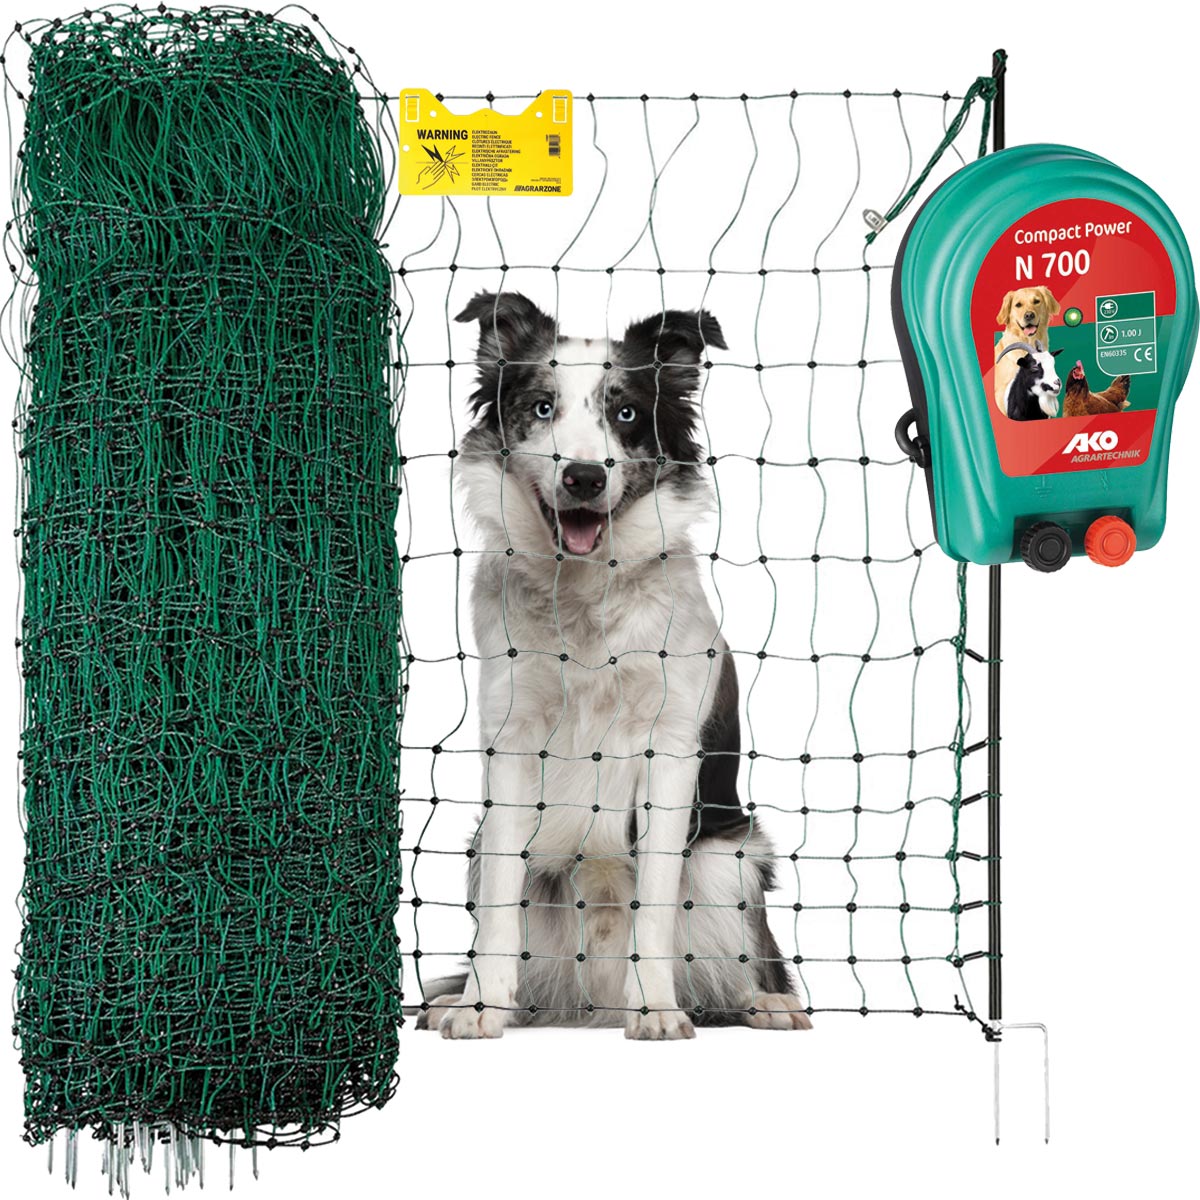 Agrarzone kit recinto per cani N700 230V, 1J, rete 25 m x 106 cm, verde